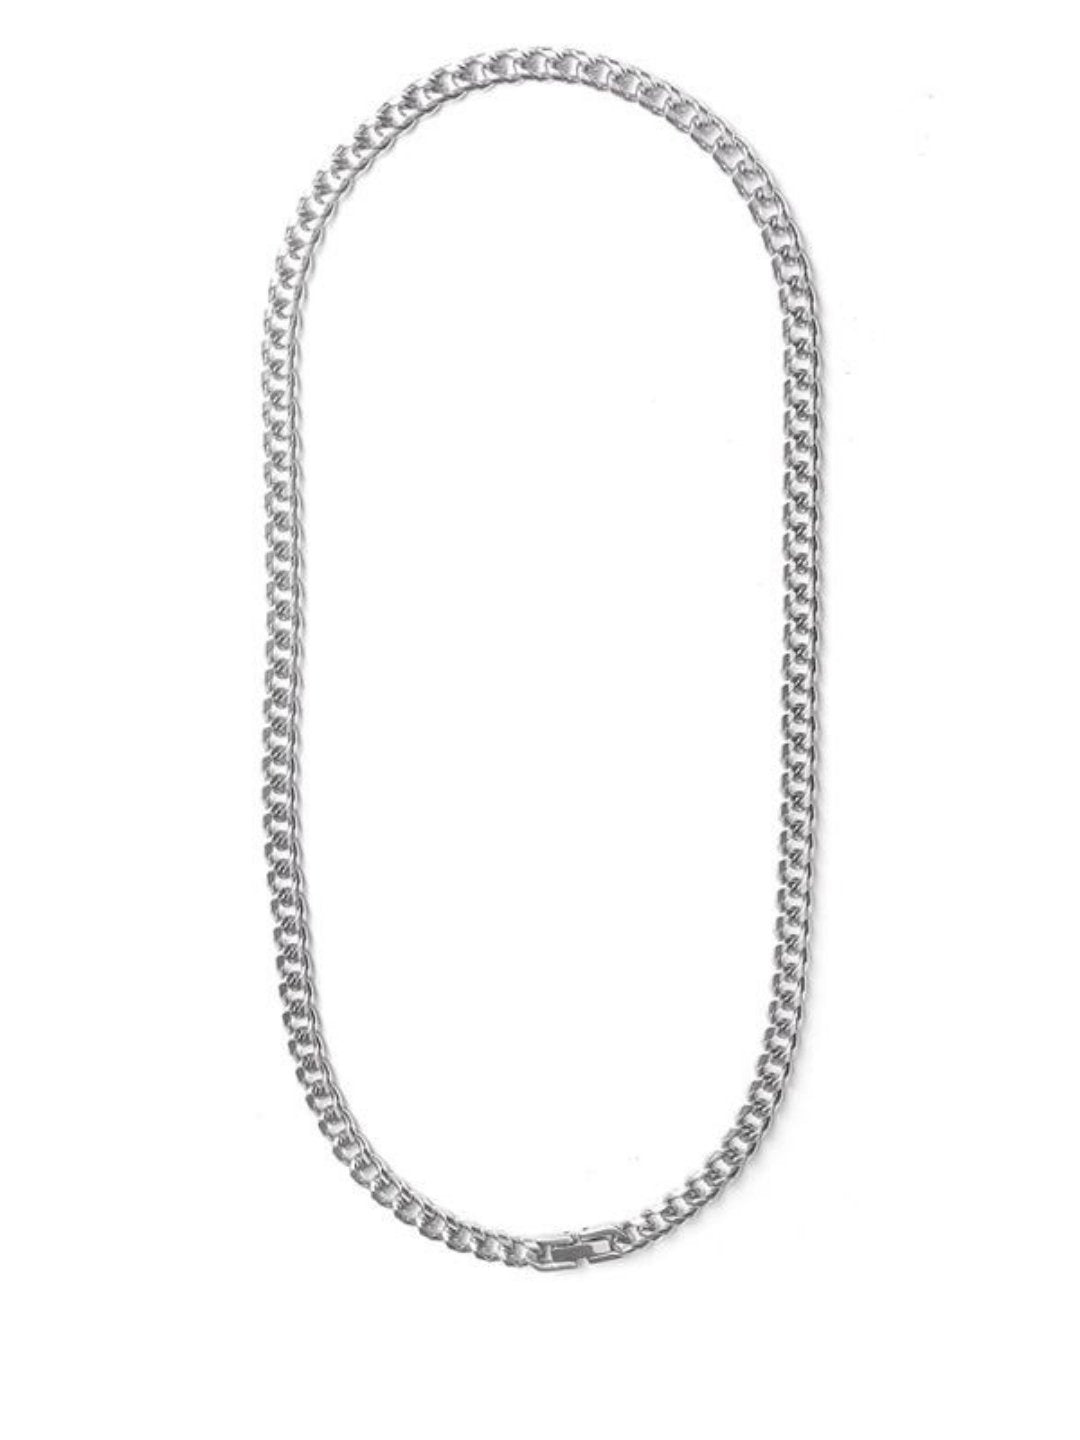 Silver necklace ax19 - AXES